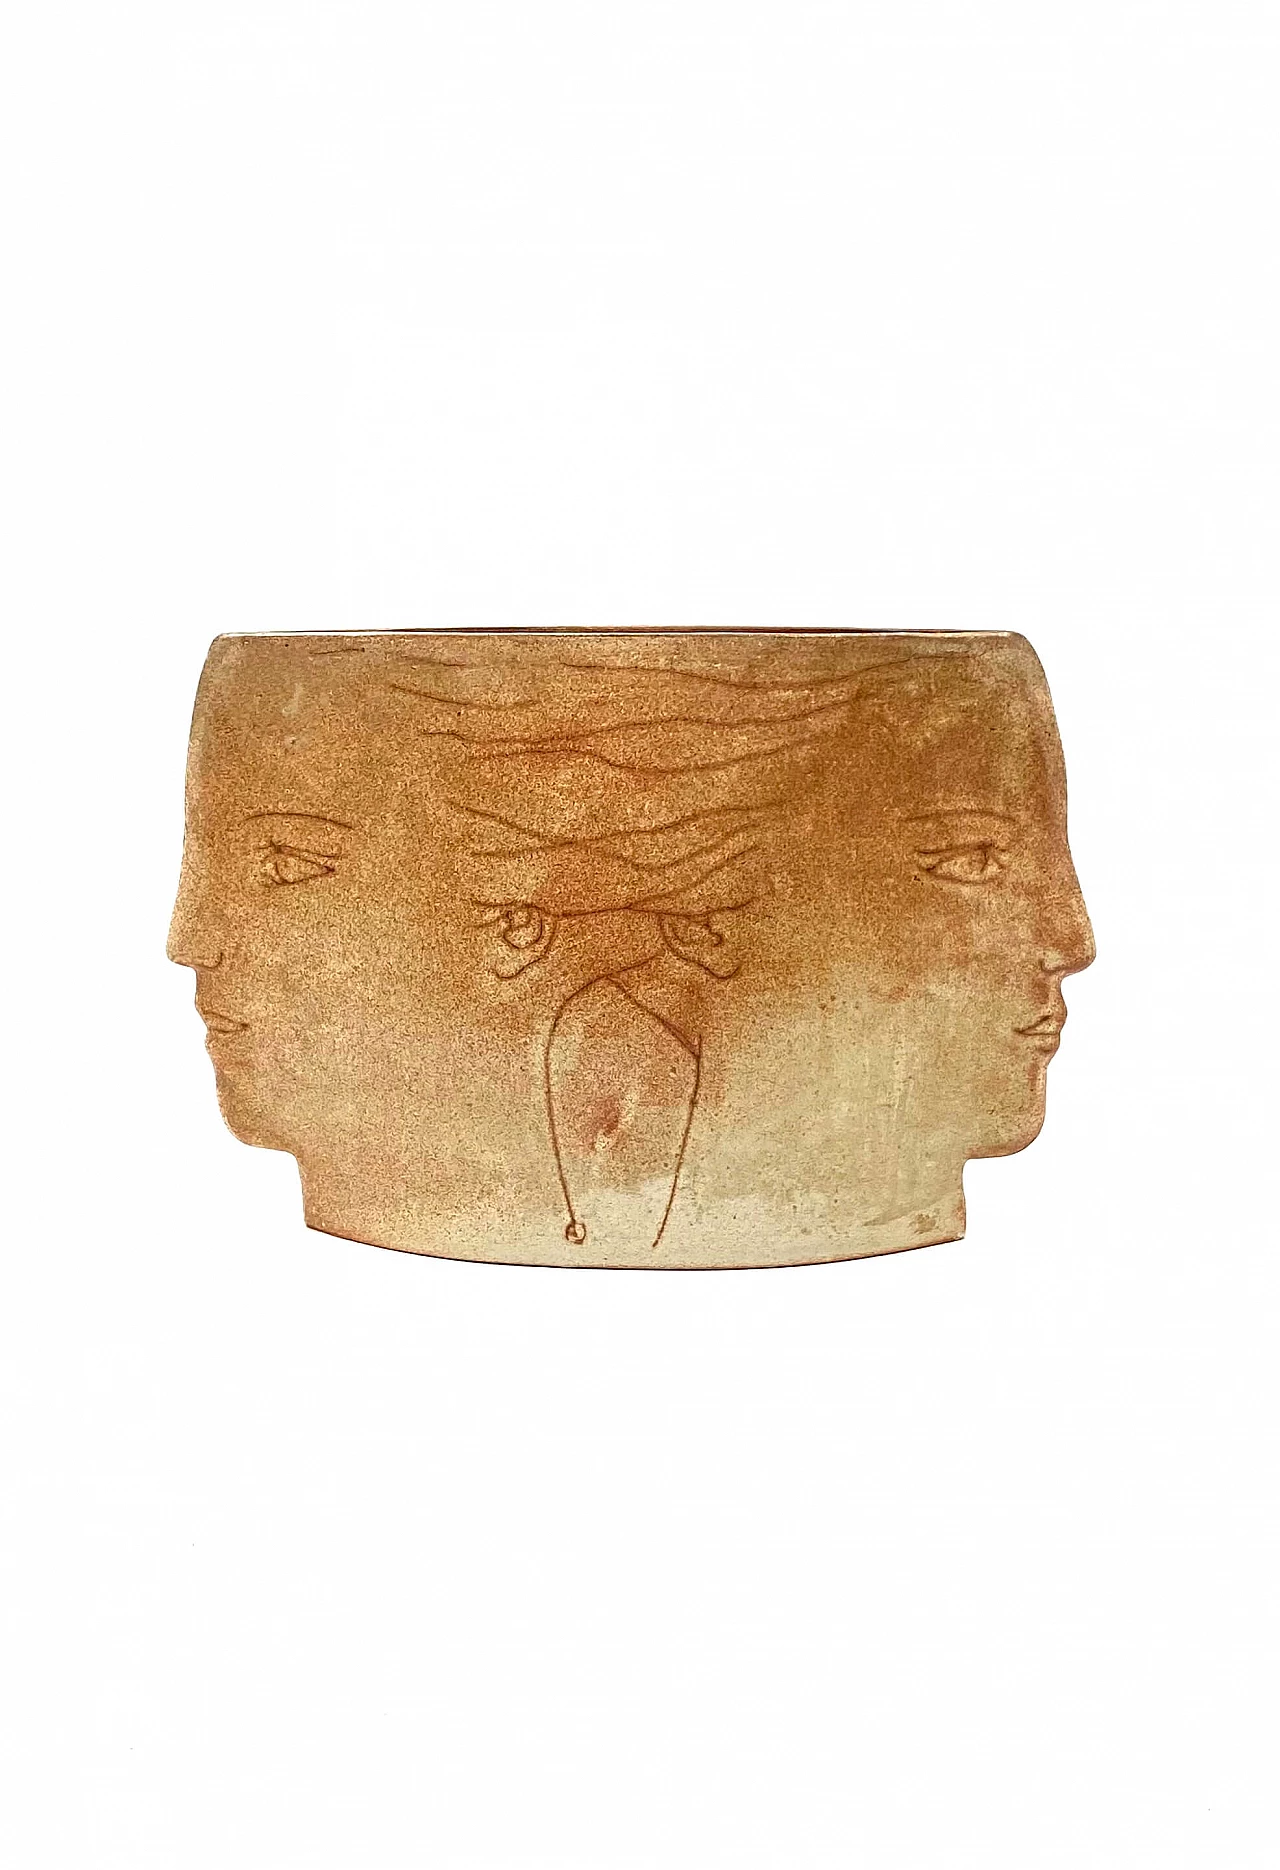 Vaso in ceramica Visages, anni '60 18